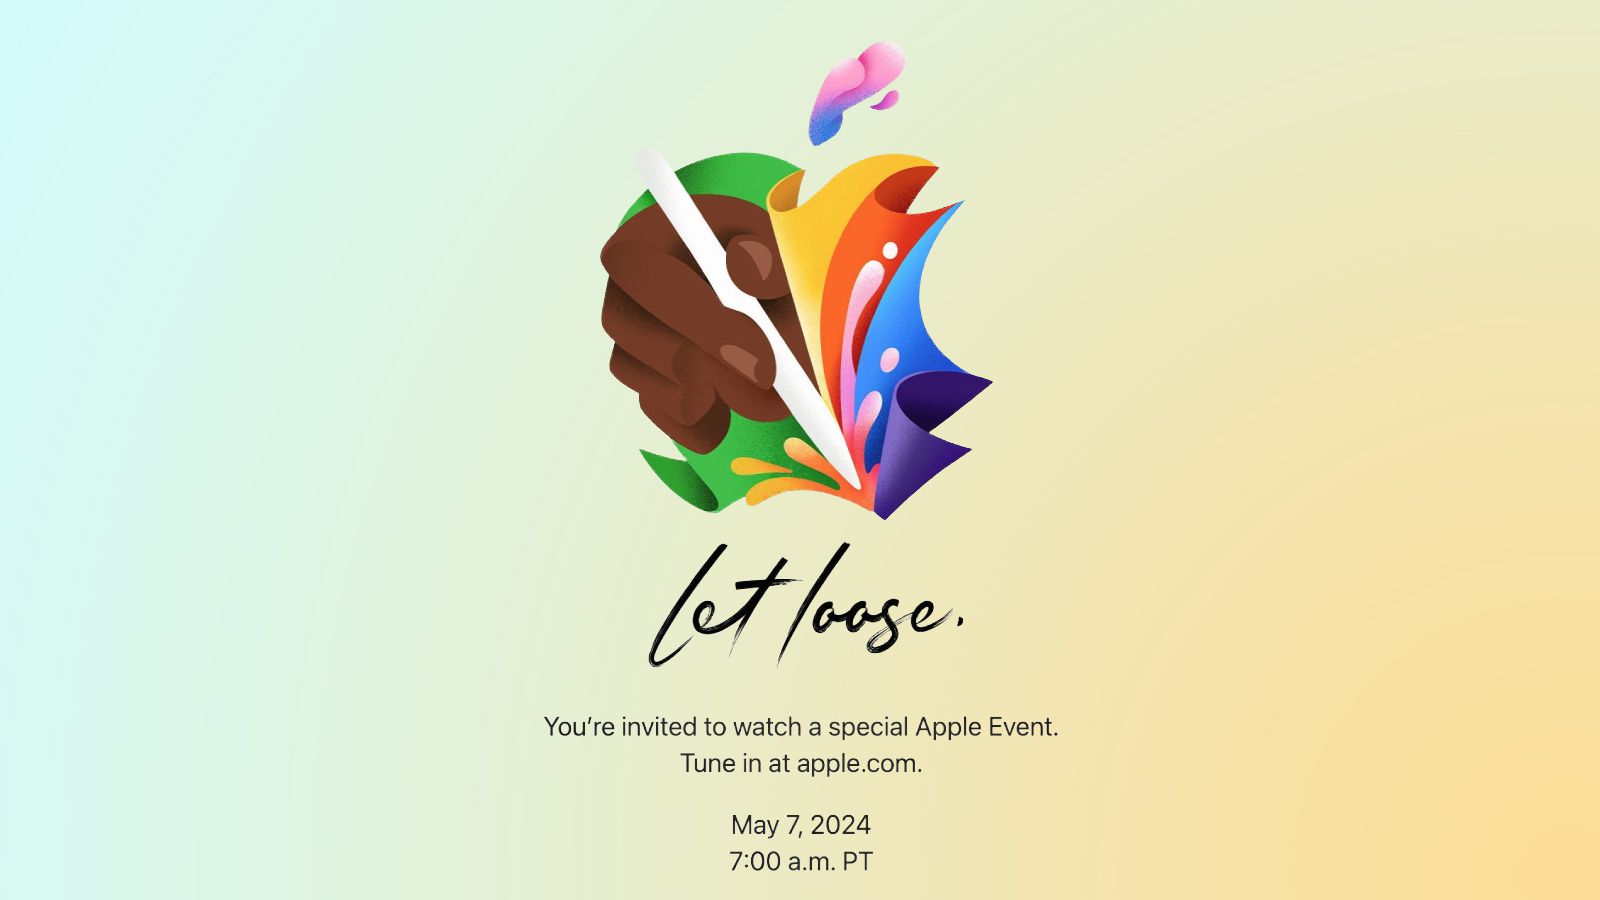 Apple kondigt het 'Let Loose'-evenement aan op 7 mei, te midden van geruchten over nieuwe iPads